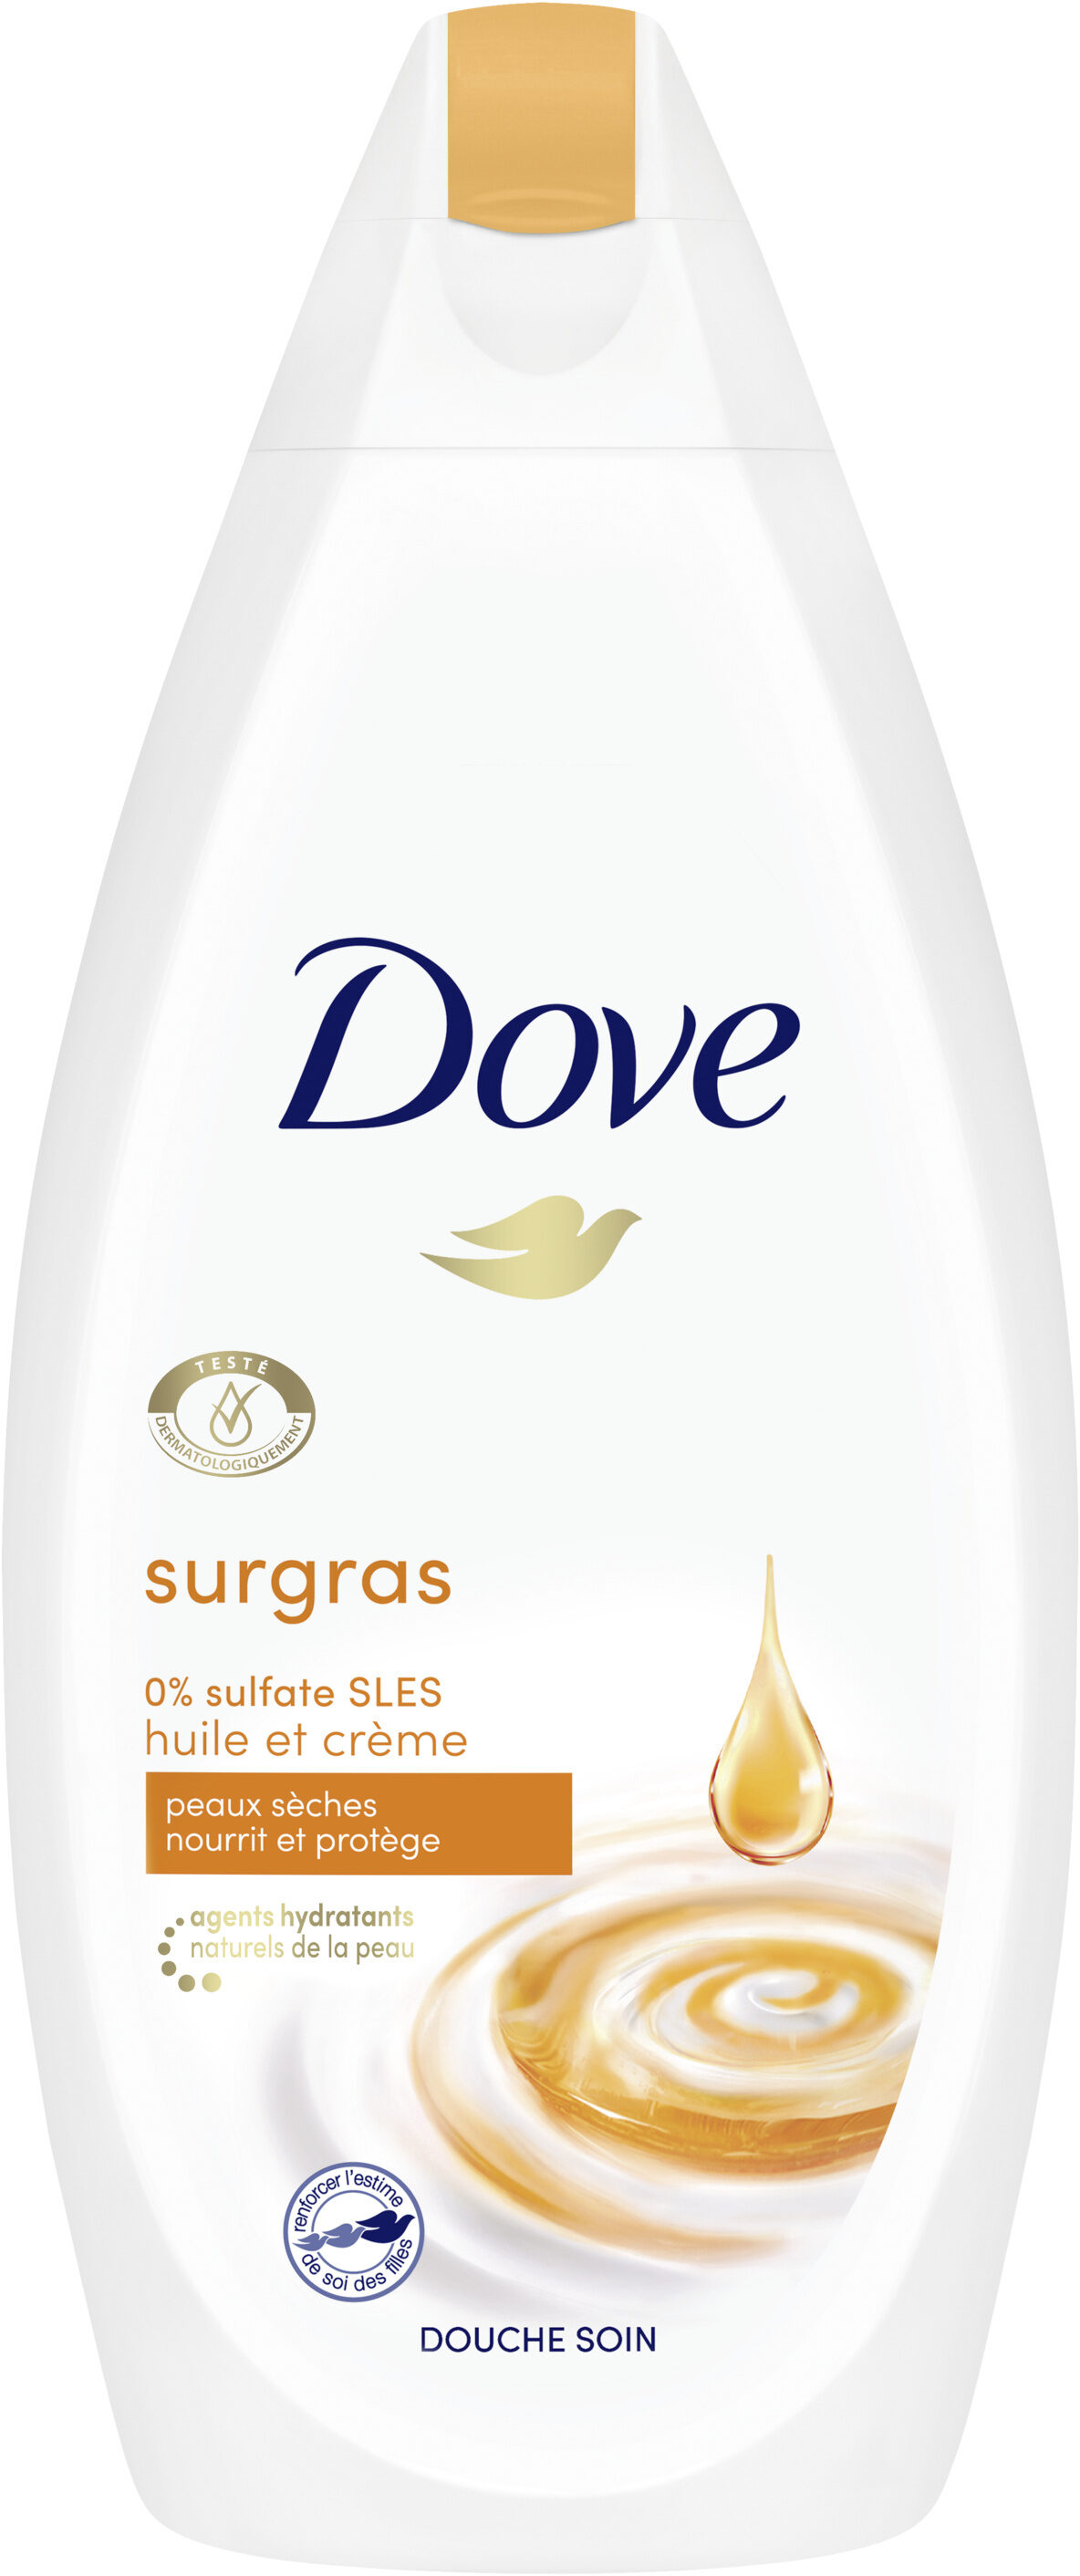 Dove Gel Douche Surgras Huile et Crème 400ml - Product - fr